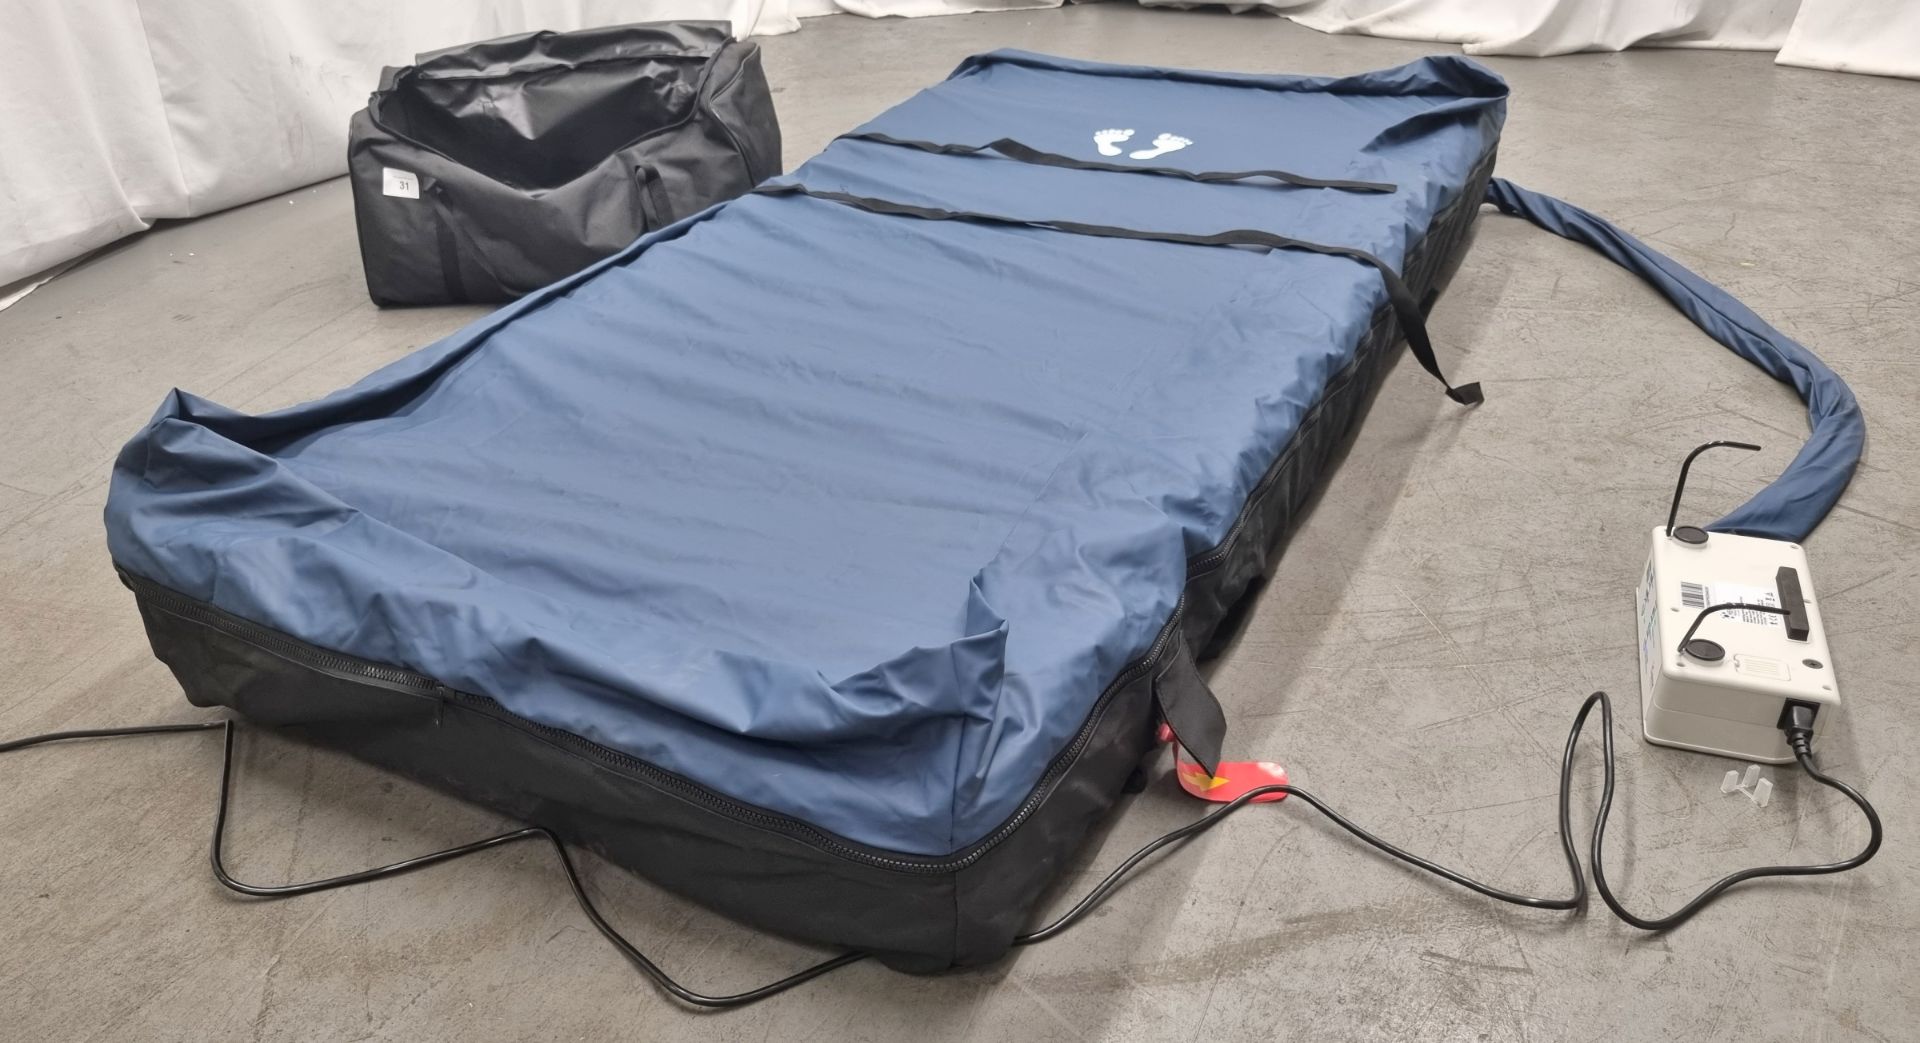 Herida Argyll II dynamic airflow mattress system with digital pump - Bild 6 aus 10